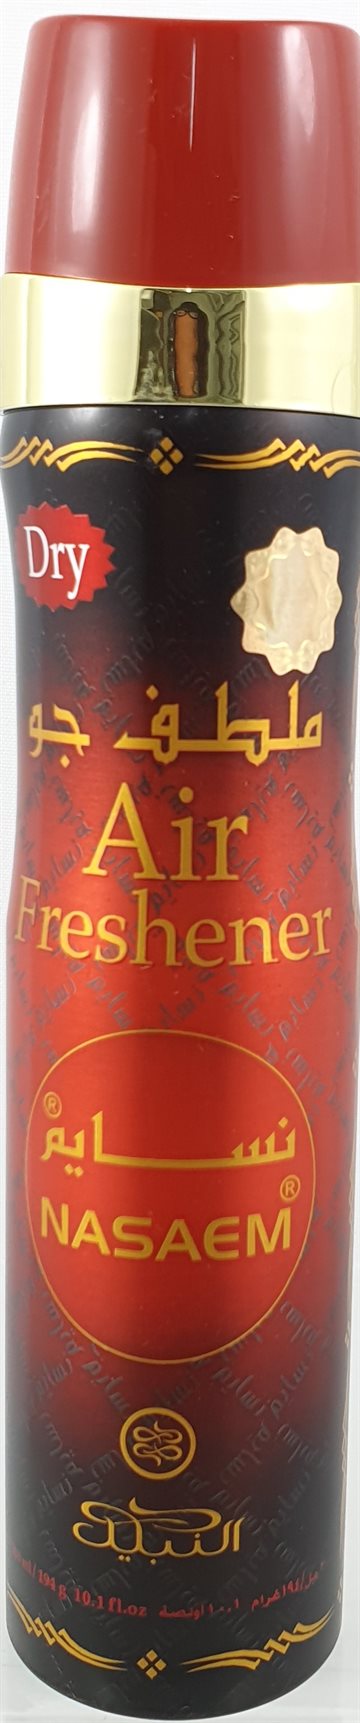 Air Freshener Naseem 300ml.